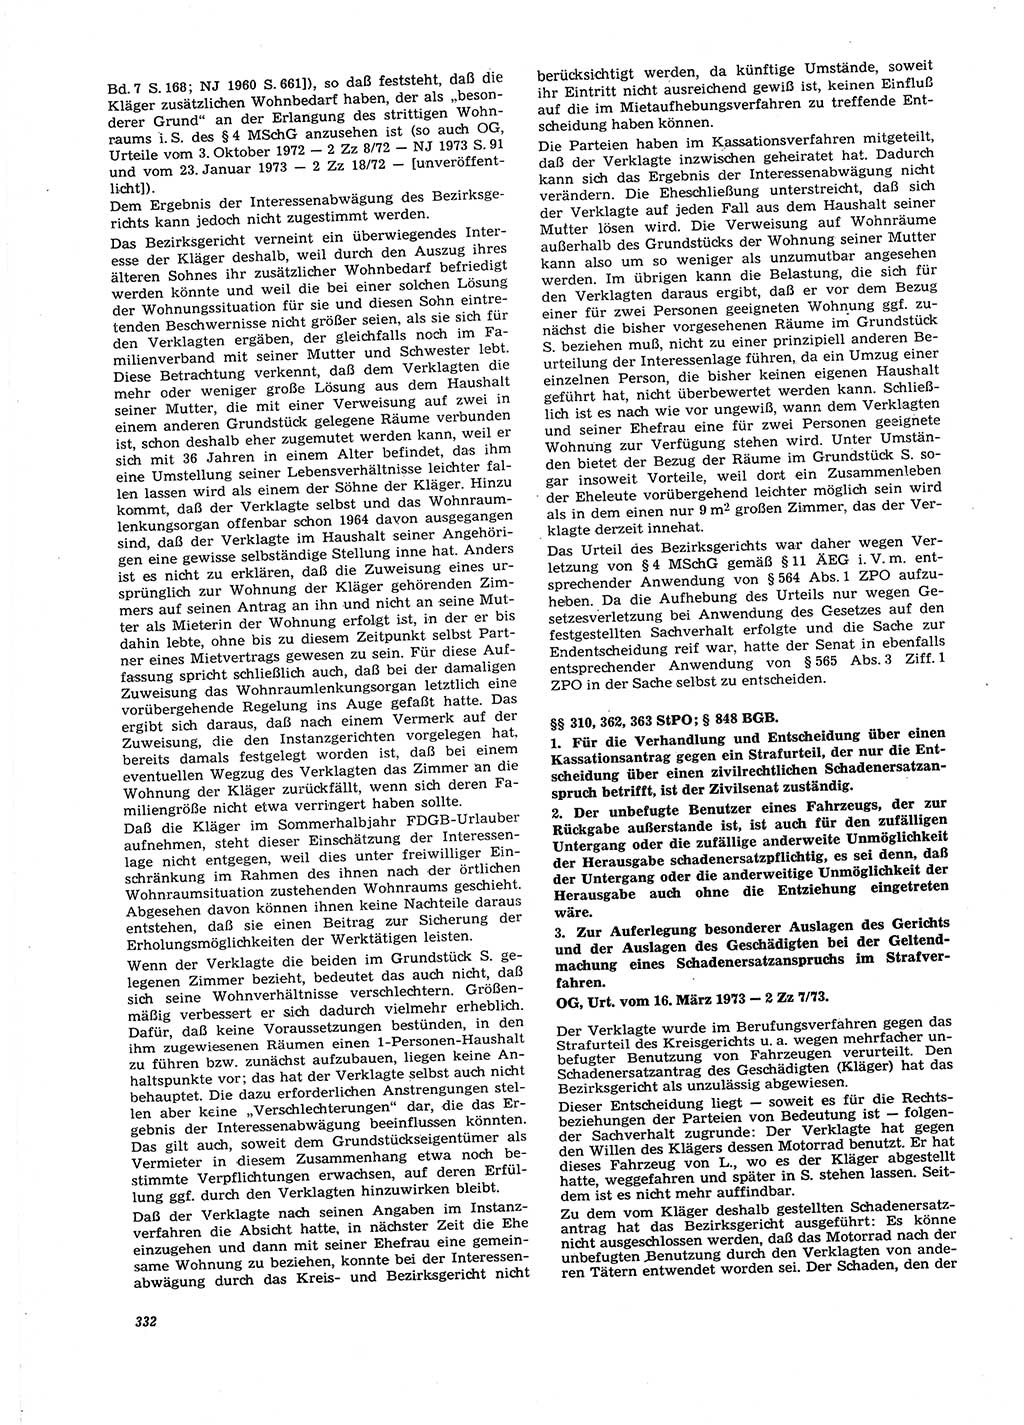 Neue Justiz (NJ), Zeitschrift für Recht und Rechtswissenschaft [Deutsche Demokratische Republik (DDR)], 27. Jahrgang 1973, Seite 332 (NJ DDR 1973, S. 332)